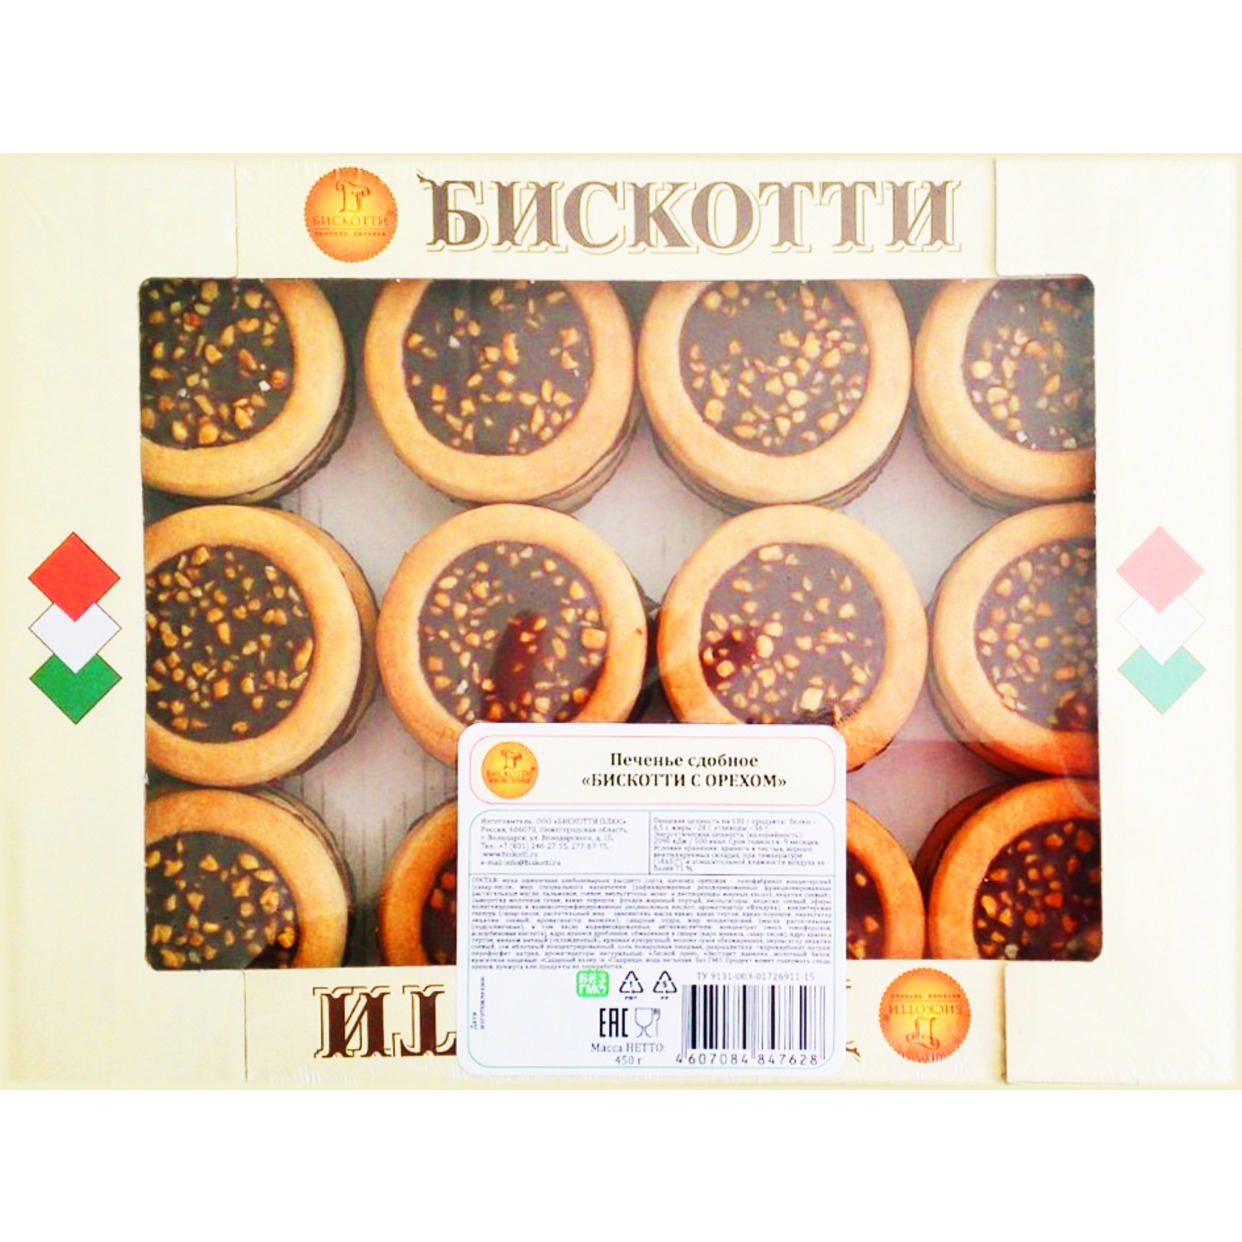 Печенье сдобное БИСКОТТИ с орехом 450г по акции в Пятерочке